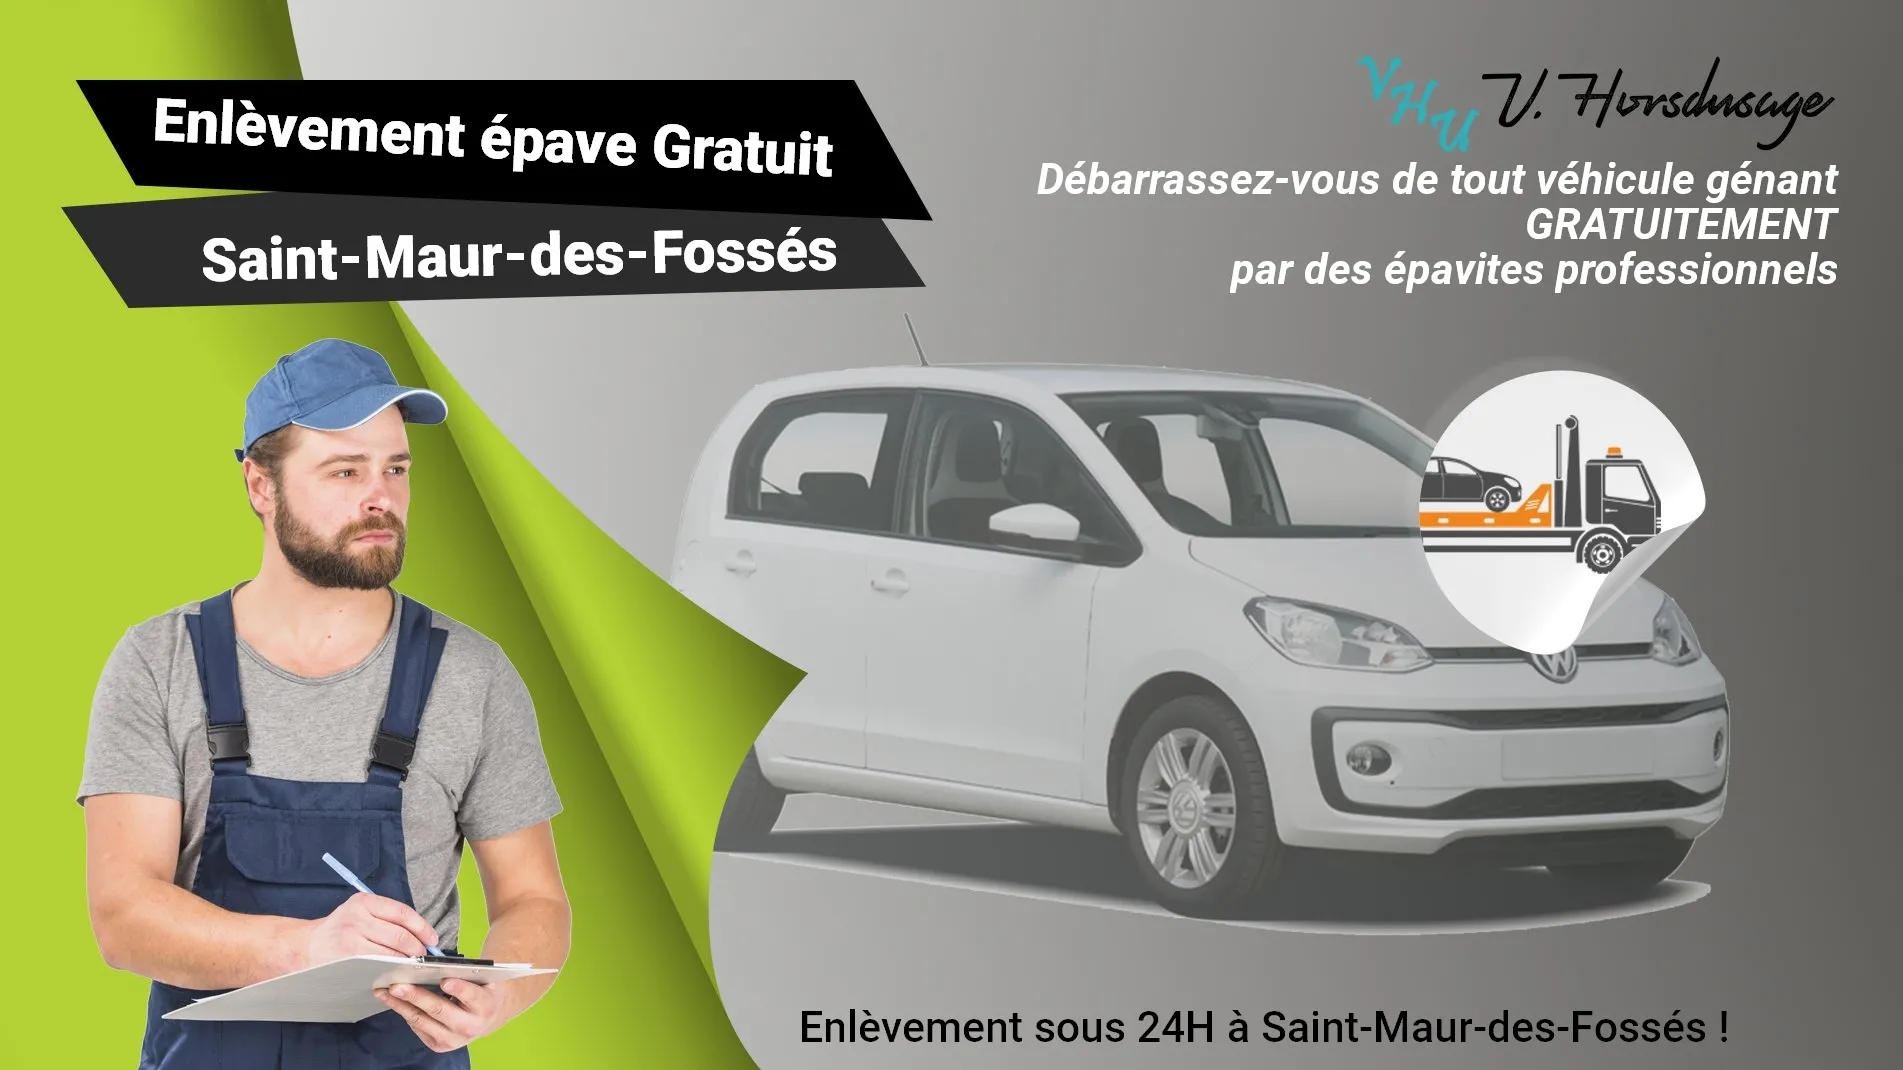 Pour un enlèvement gratuit à Saint-Maur-des-Fossés, contactez nos épavistes agréé VHU